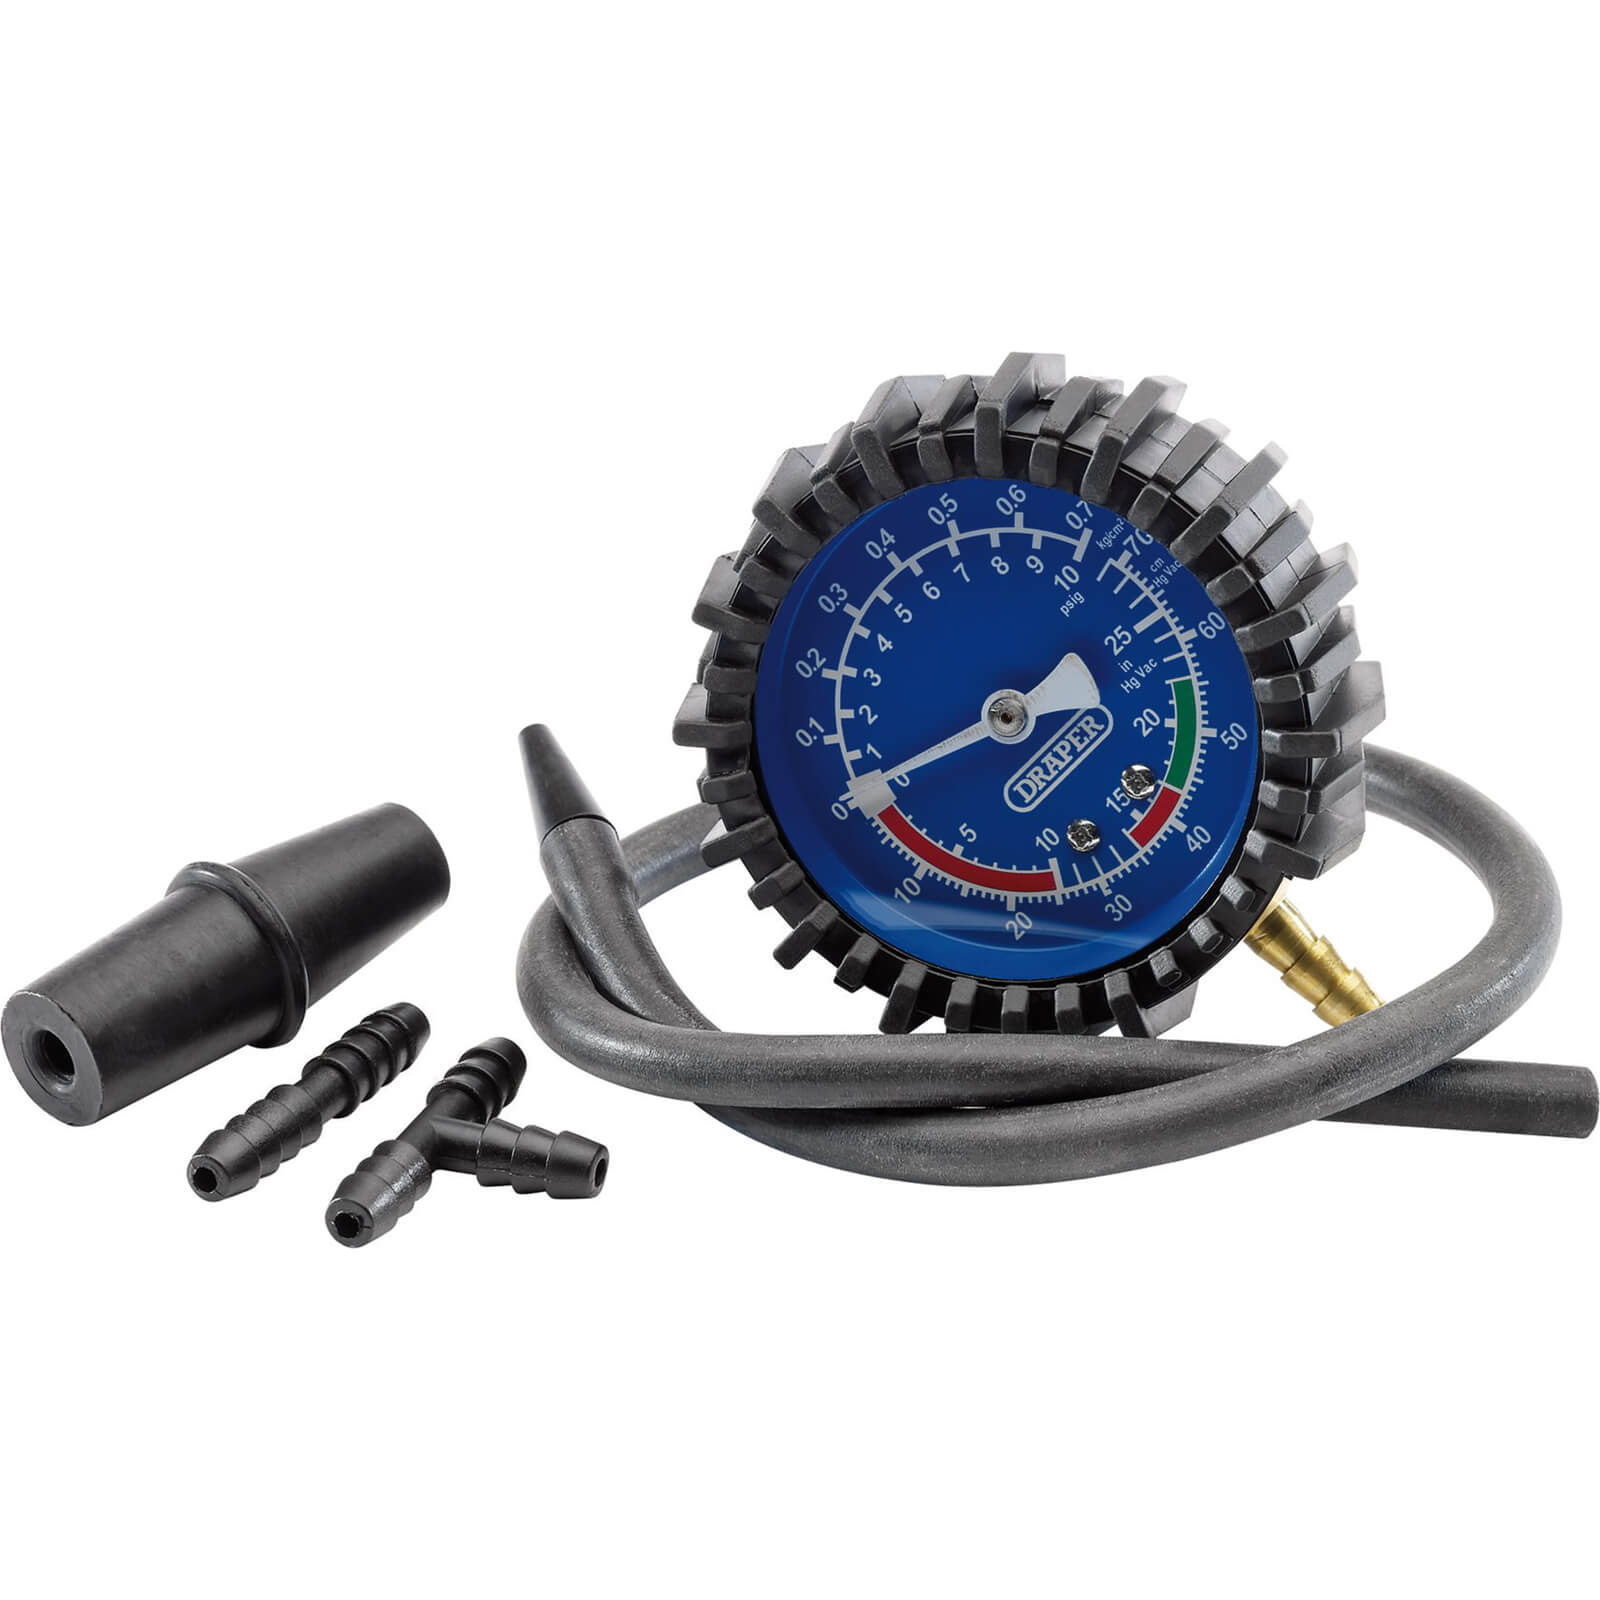 Image of Draper 5 Piece Vacuum Pressure Test Kit